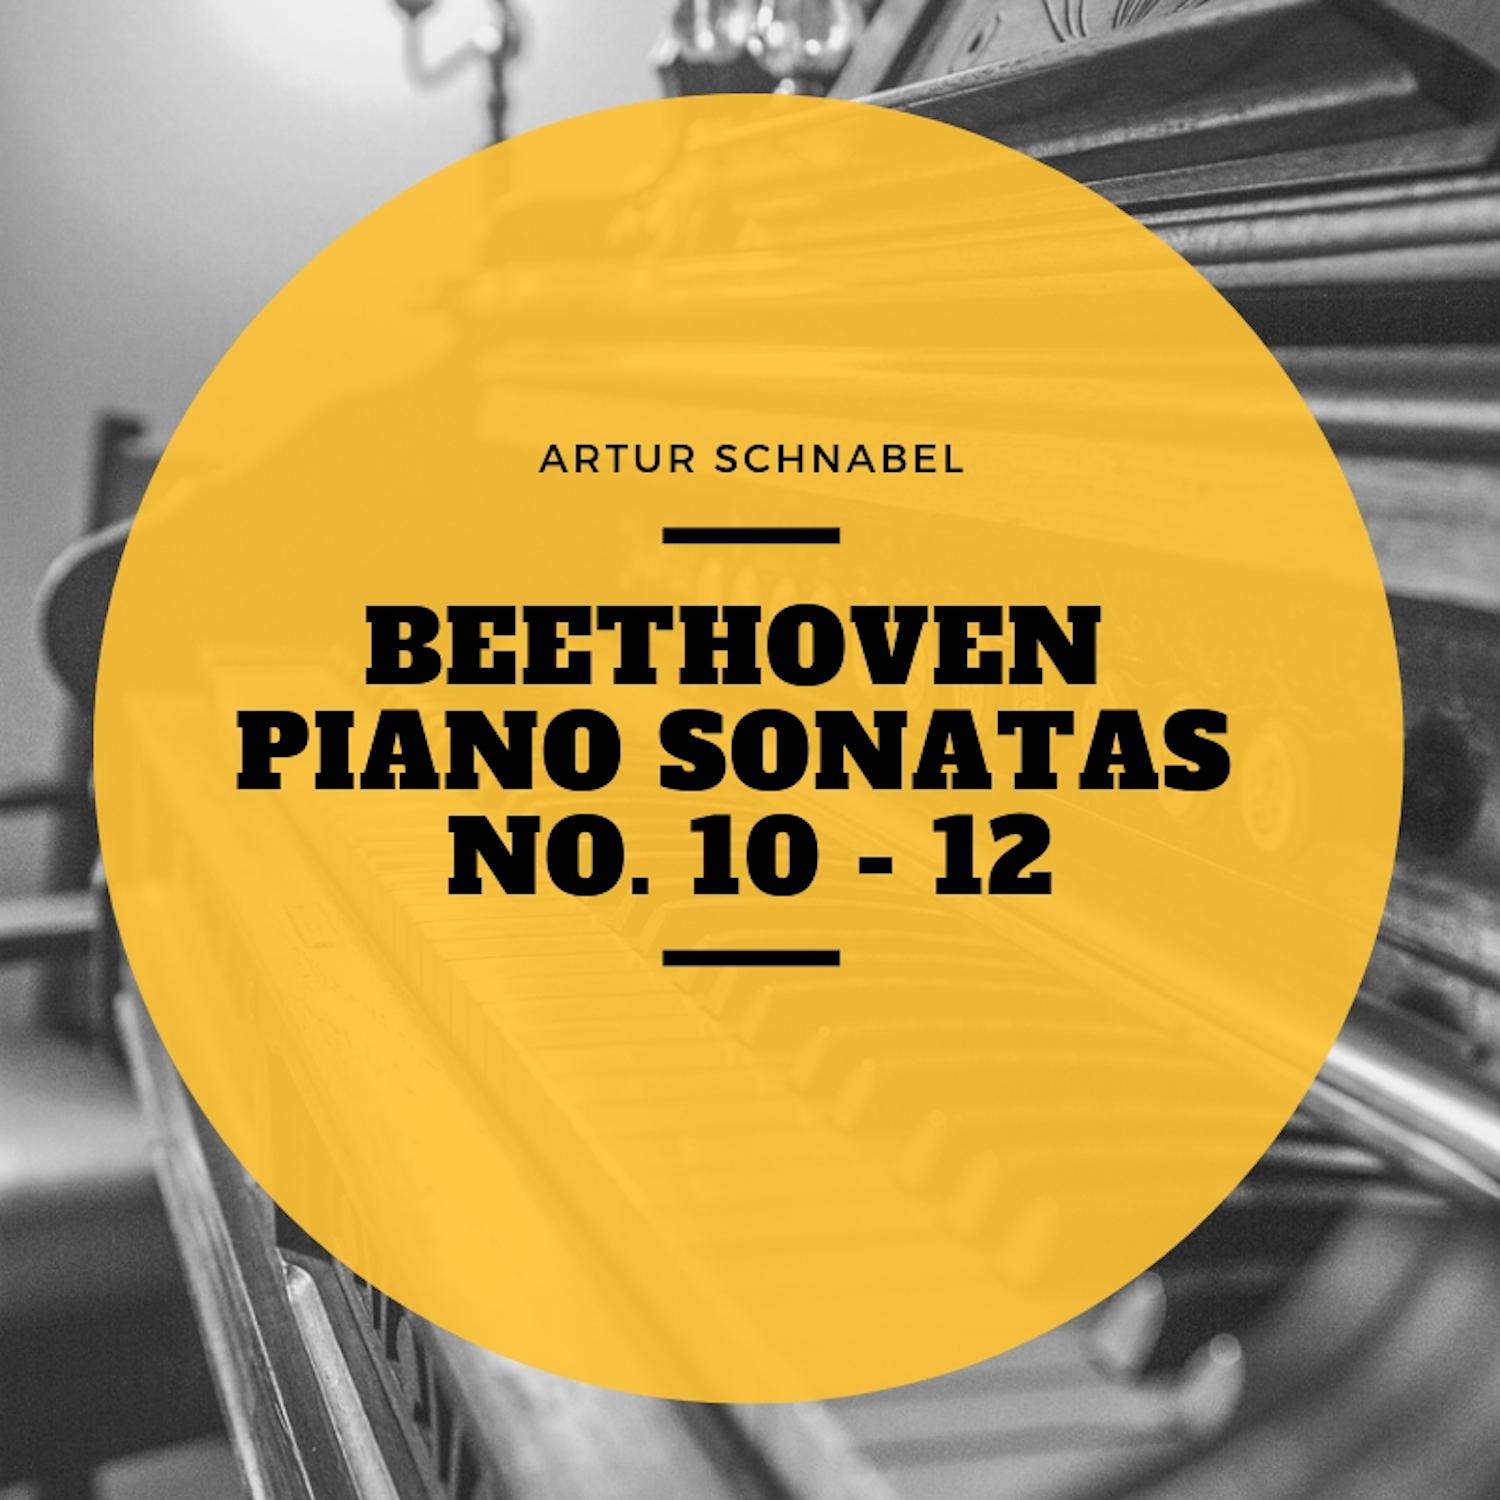 Beethoven Piano Sonatas No. 10 - 12